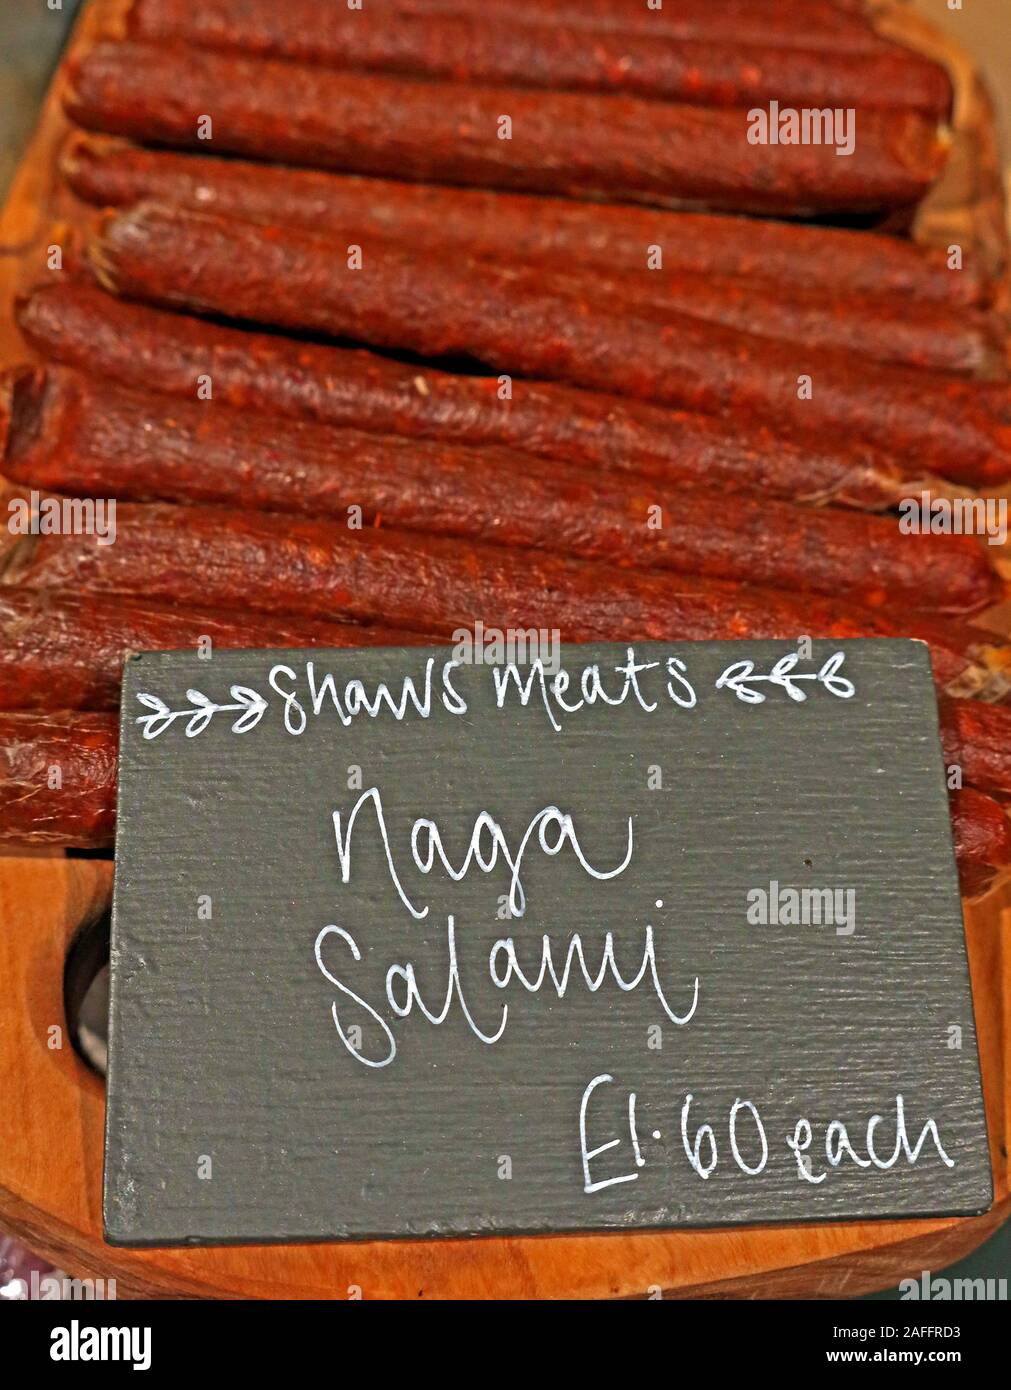 Handwerkliche Salami, Shaws Fleisch, auf dem Bio-Markt, Bauernmarkt, Gloucestershire, Südwestengland, Großbritannien, Fleischprodukte, aus Cumbria Stockfoto